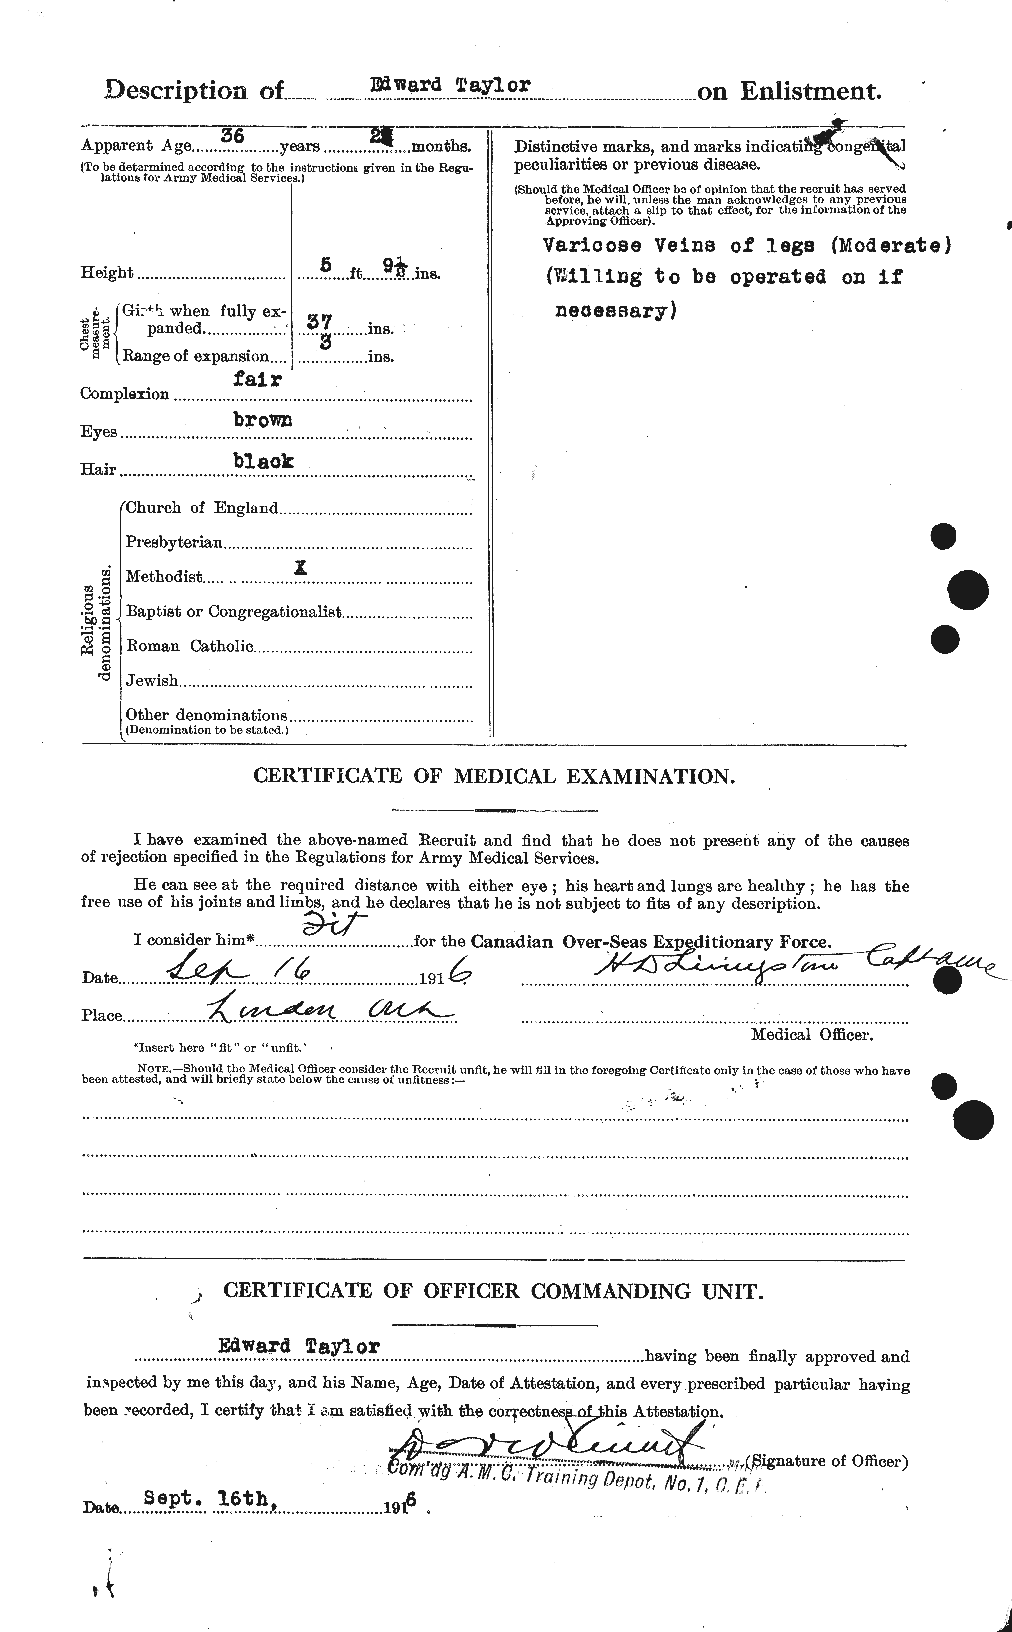 Dossiers du Personnel de la Première Guerre mondiale - CEC 627288b